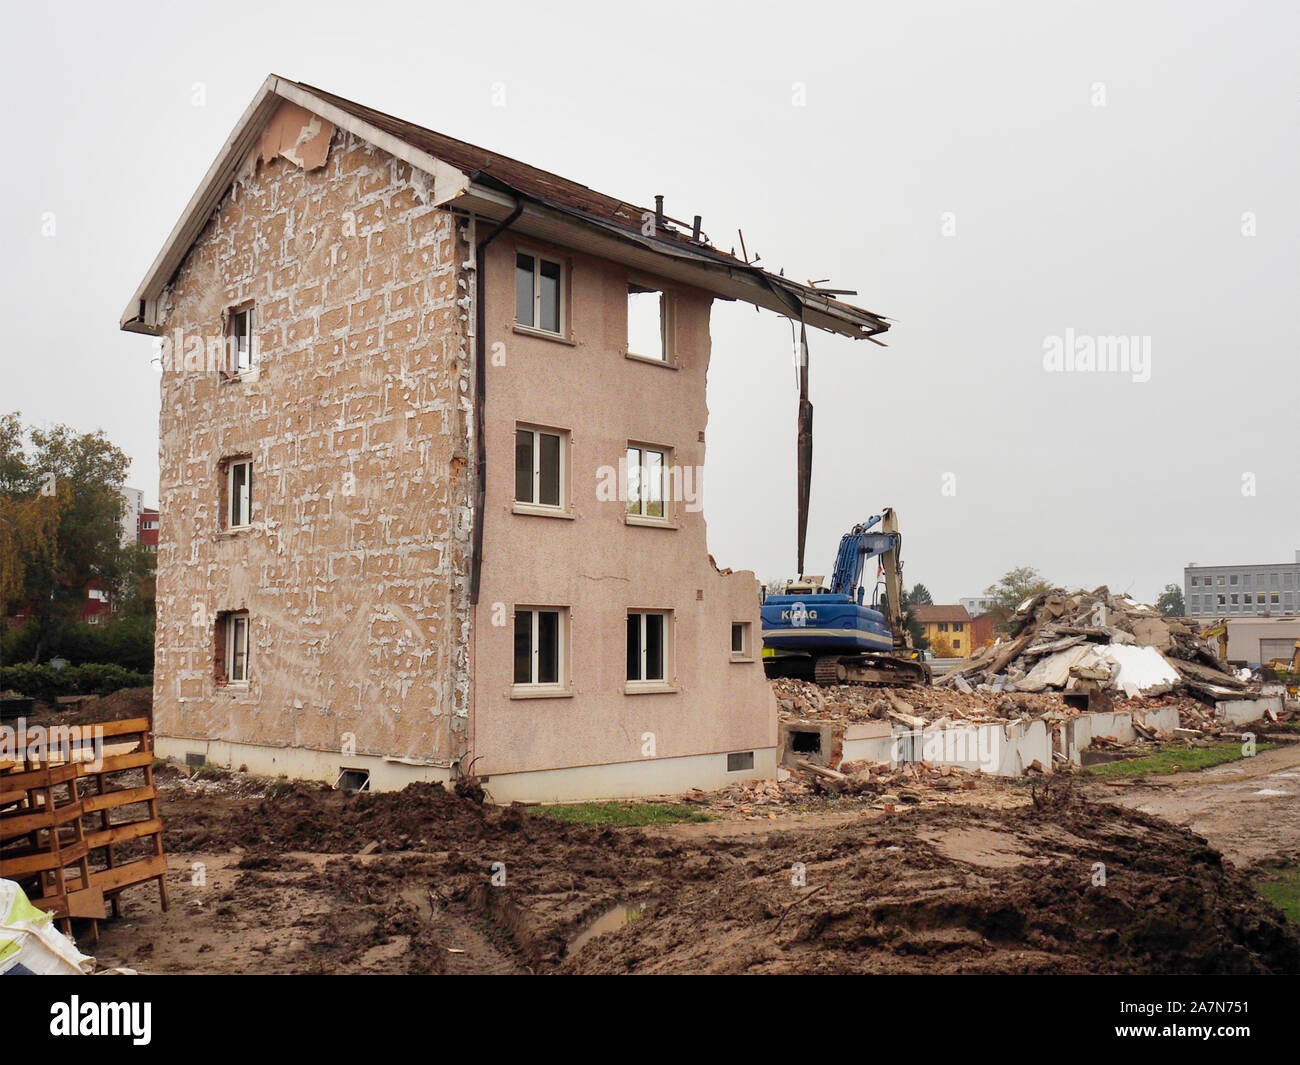 Abbruch einer Wohnsiedlung in Regensdorf ZH Foto Stock